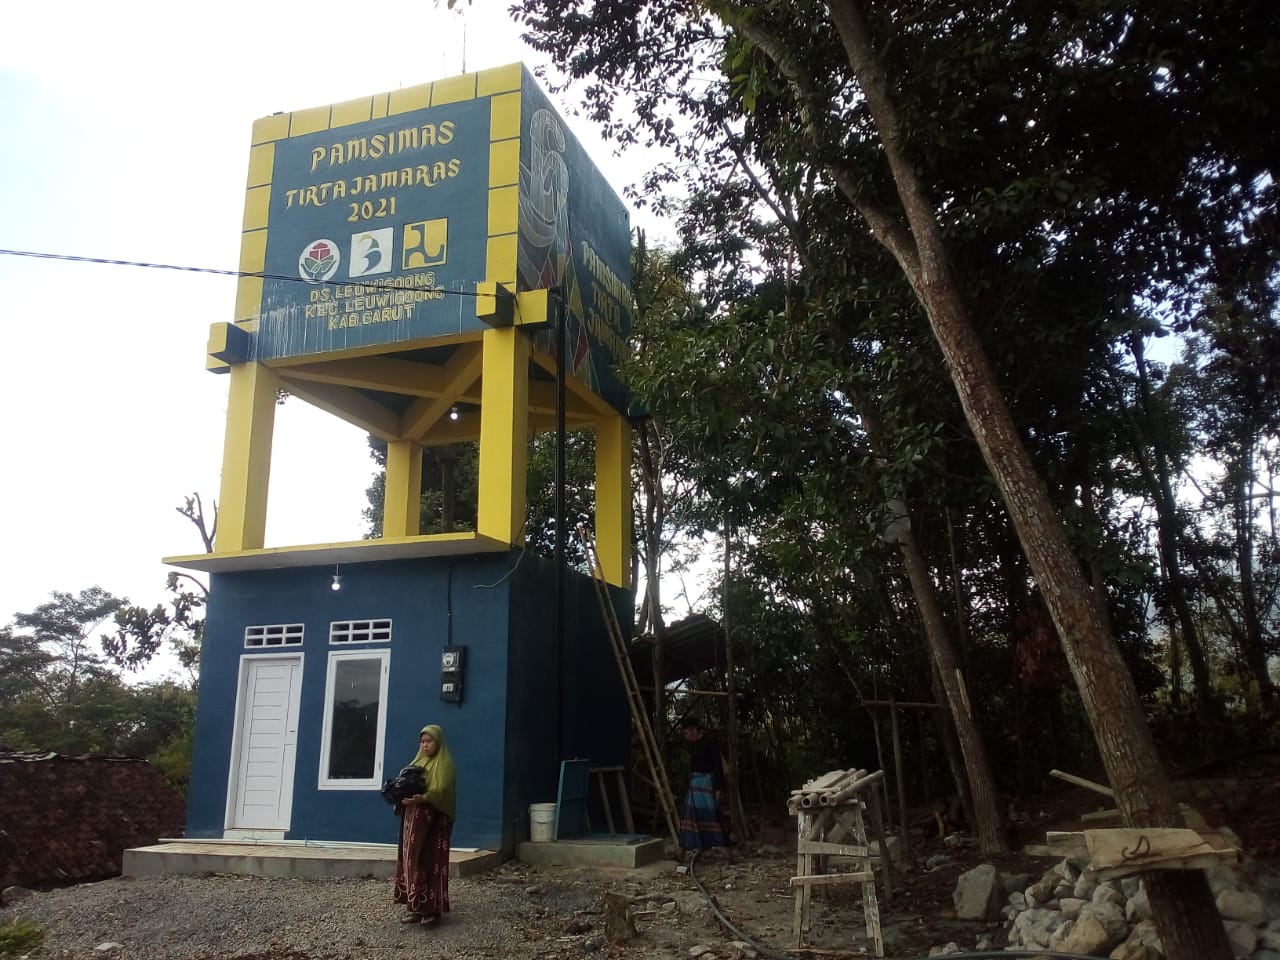 PAMSIMAS Tirta Jamaras bisa memenuhi kebutuhan air bersih warga Kampung Cikenal dan Cijeler Desa Leuwigoong.